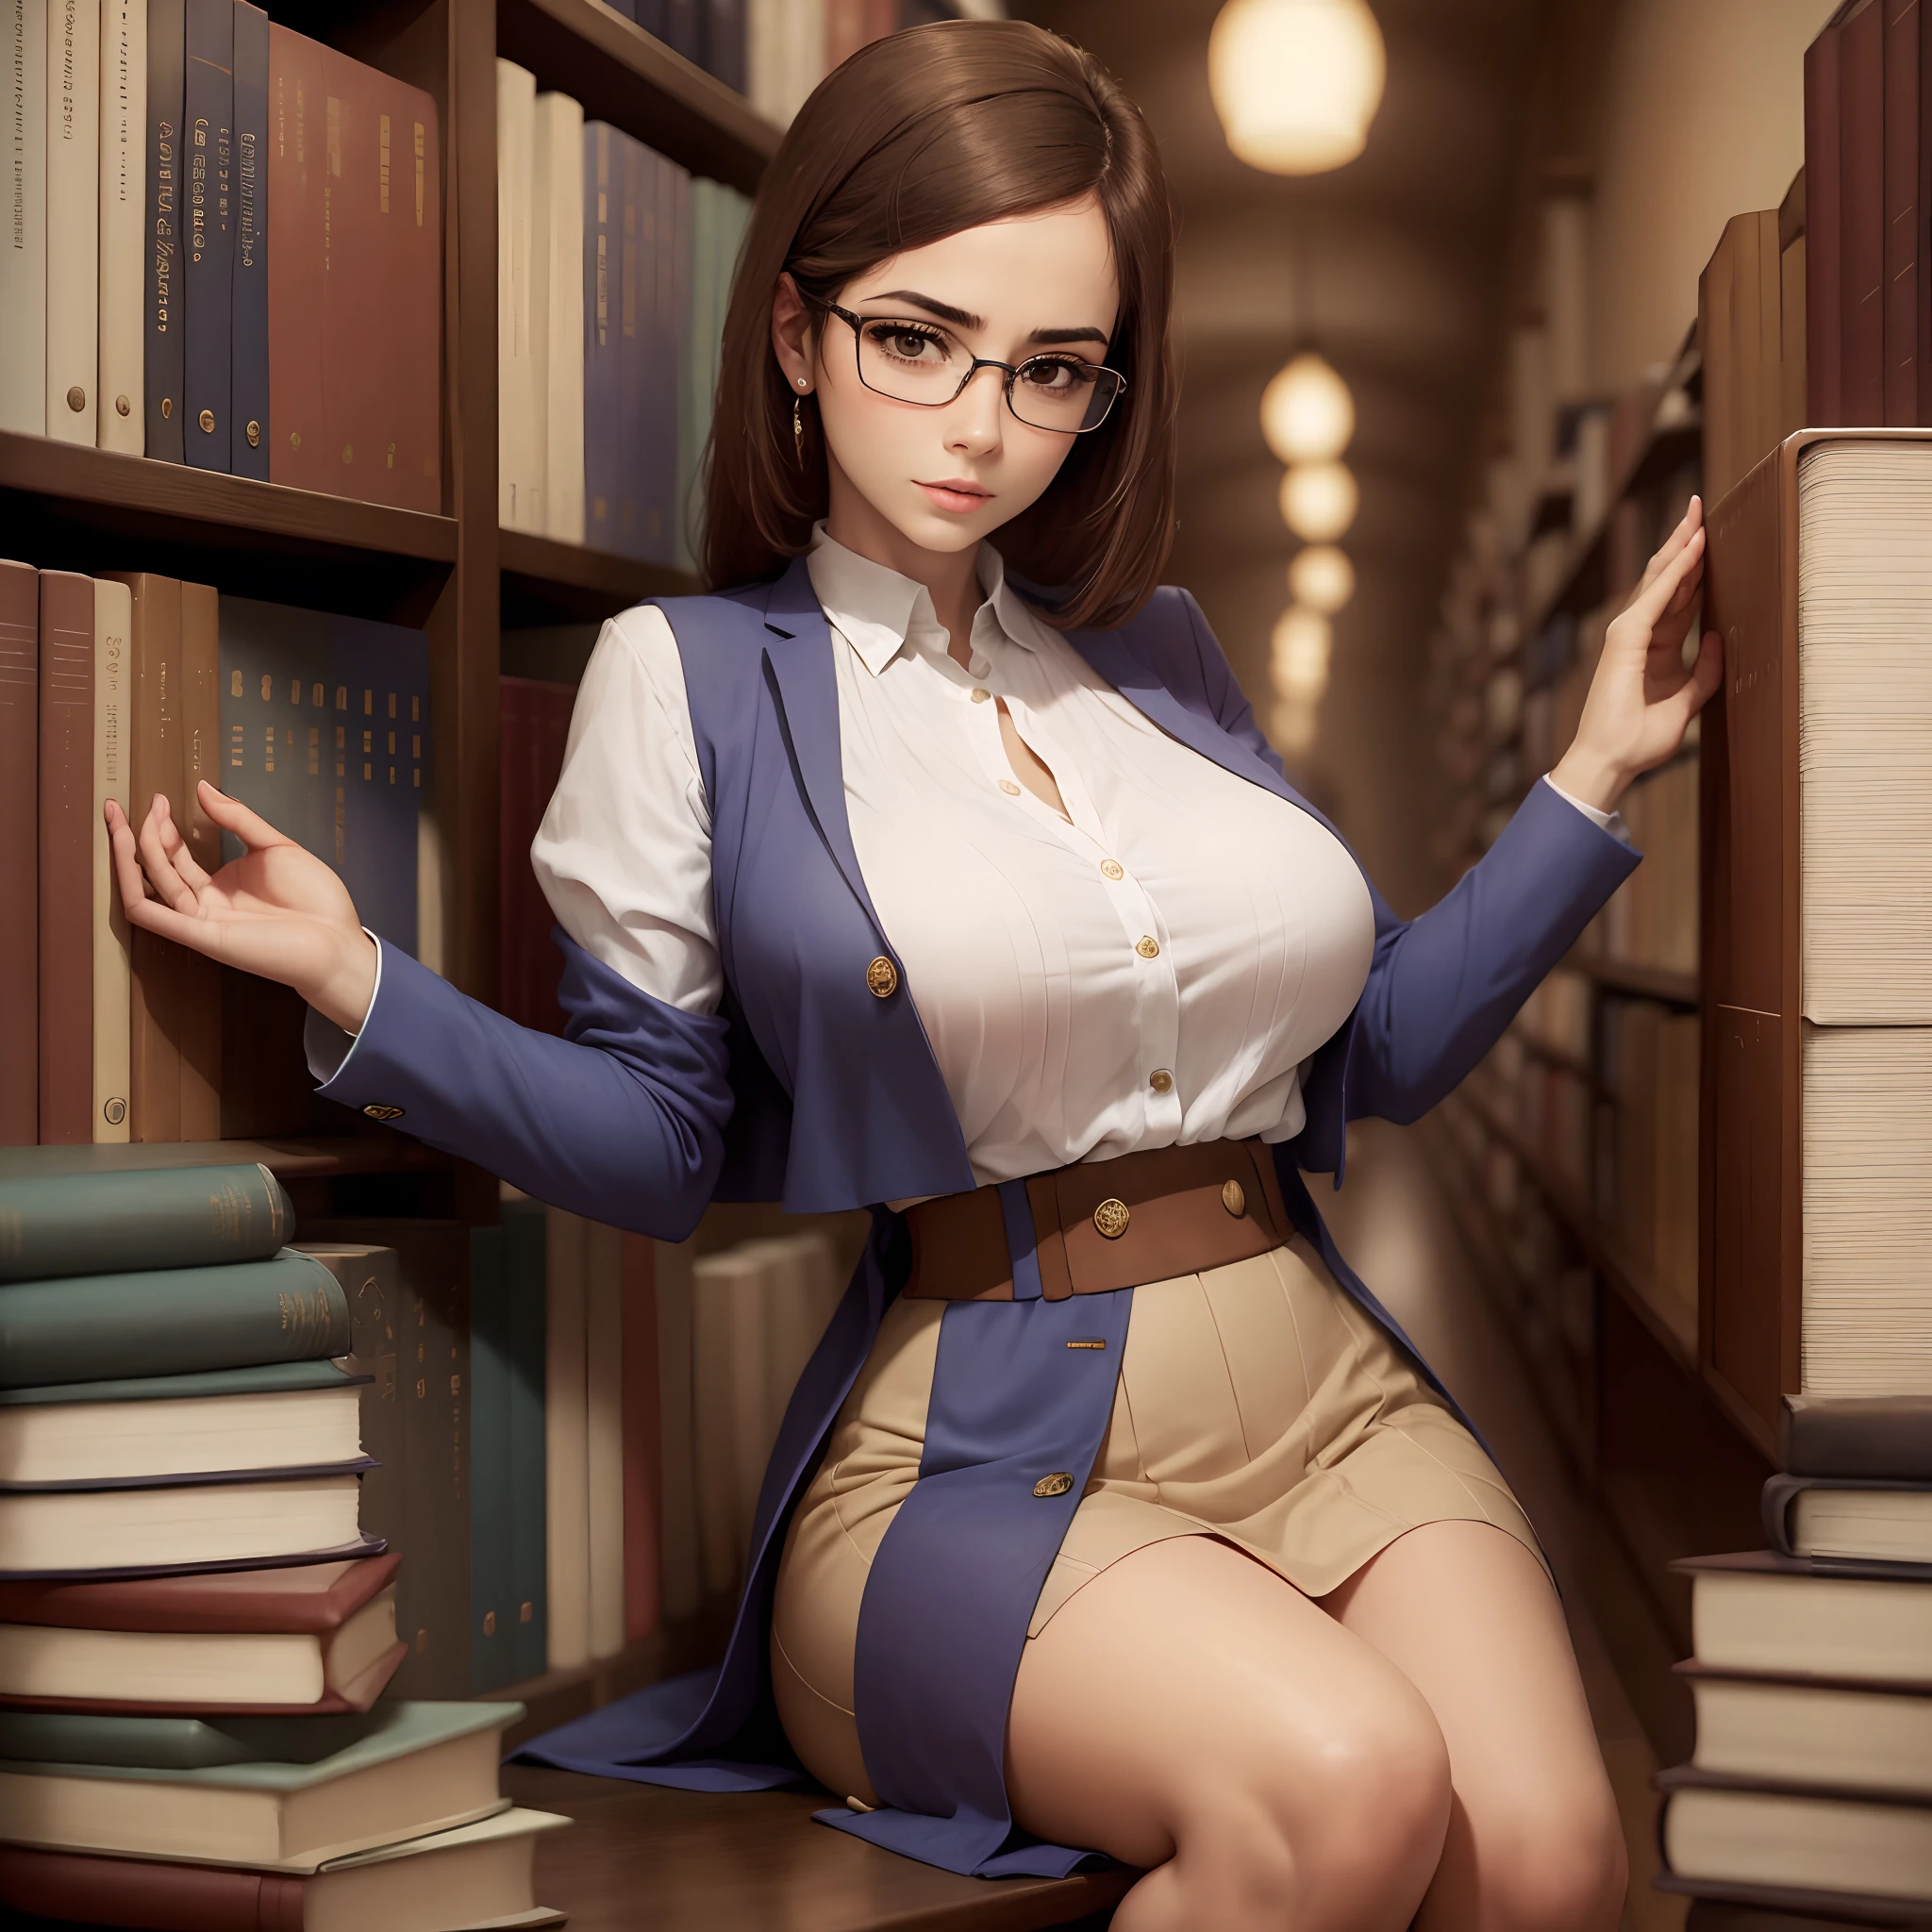 1名女士, 美丽的, 感性的, 在图书馆里, 戴眼镜, 大乳房, 苗条的, 优雅的